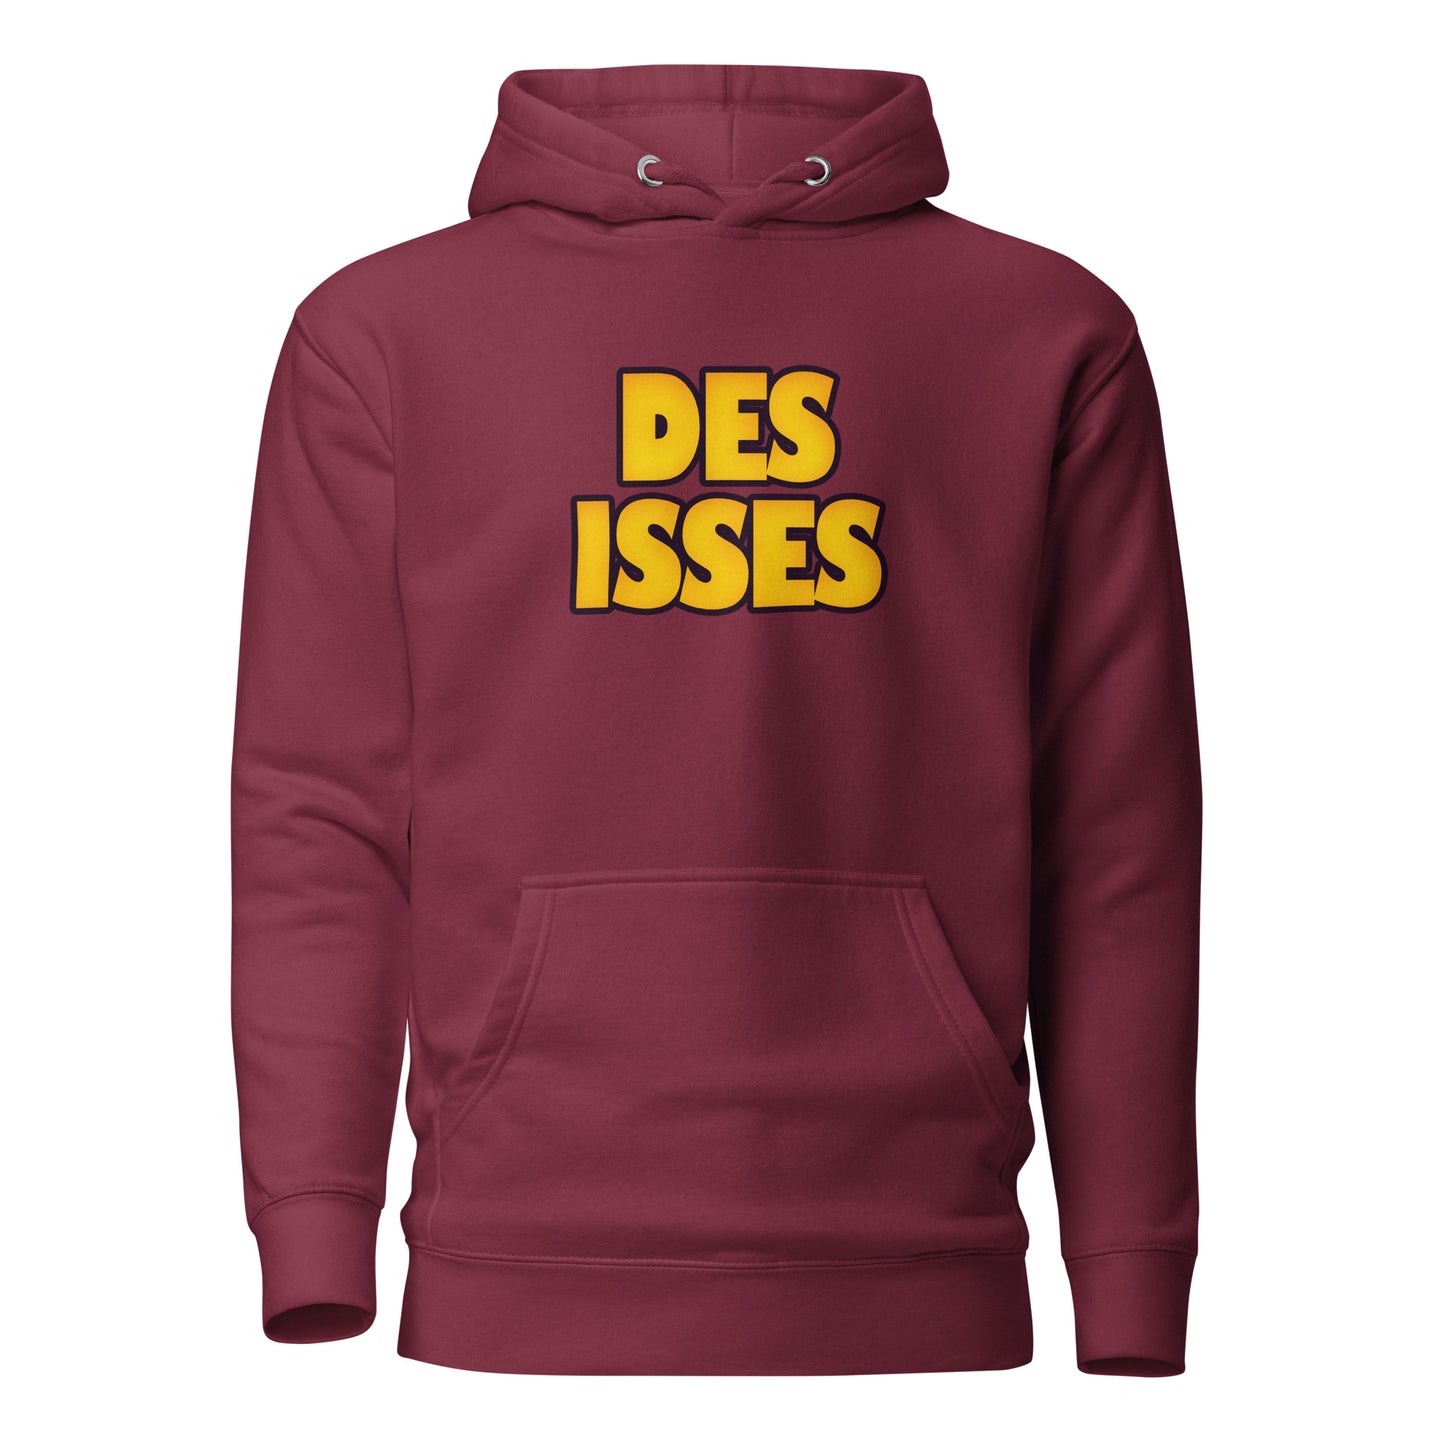 DES ISSES - Hoodie